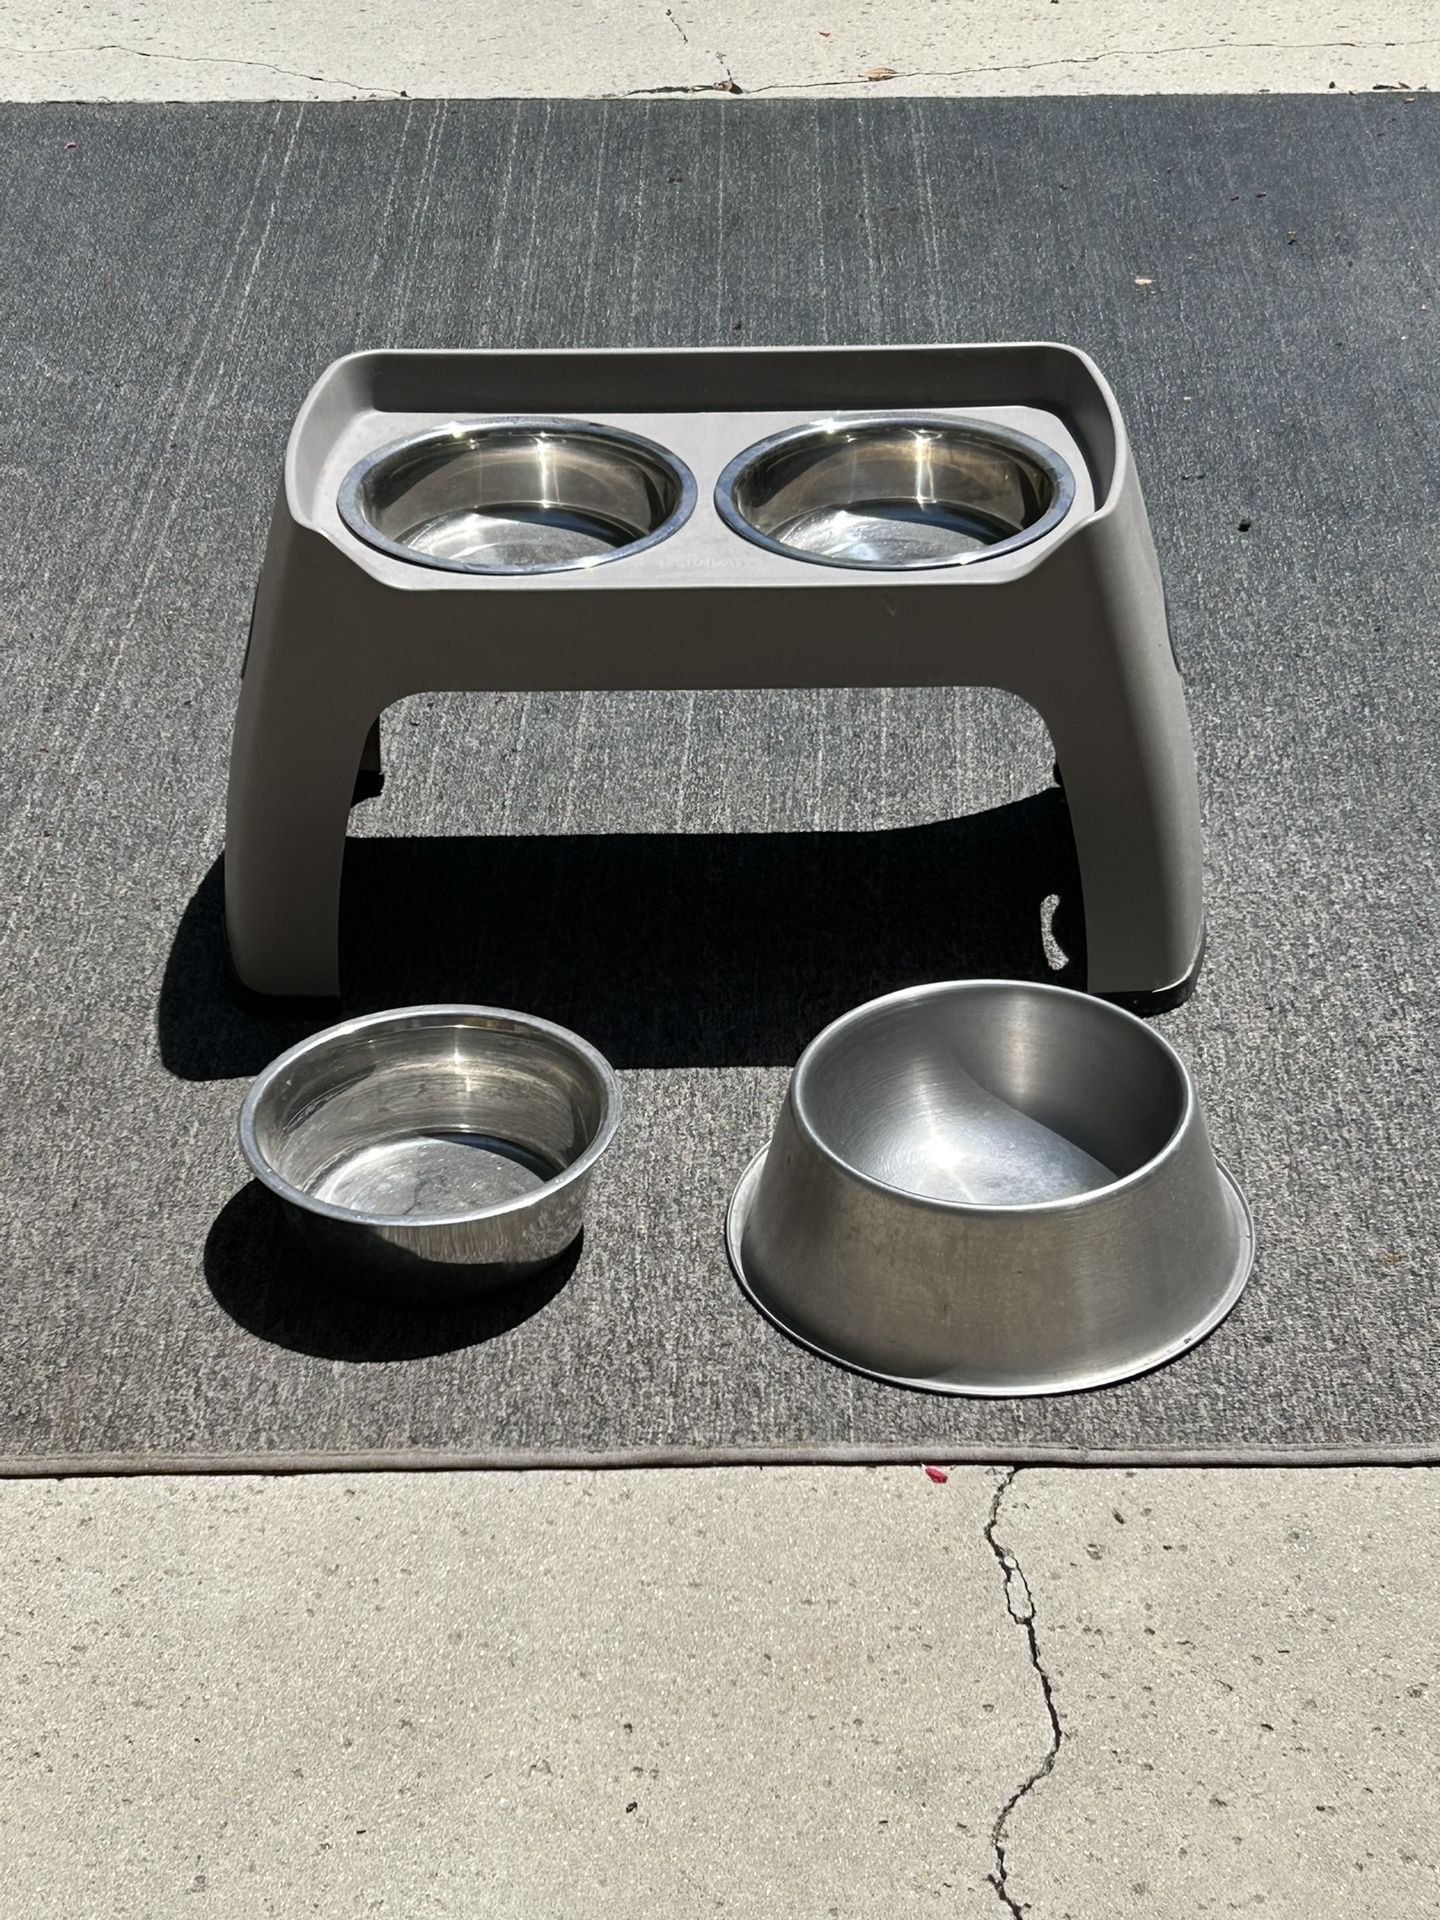 Dog Feeder Bowls